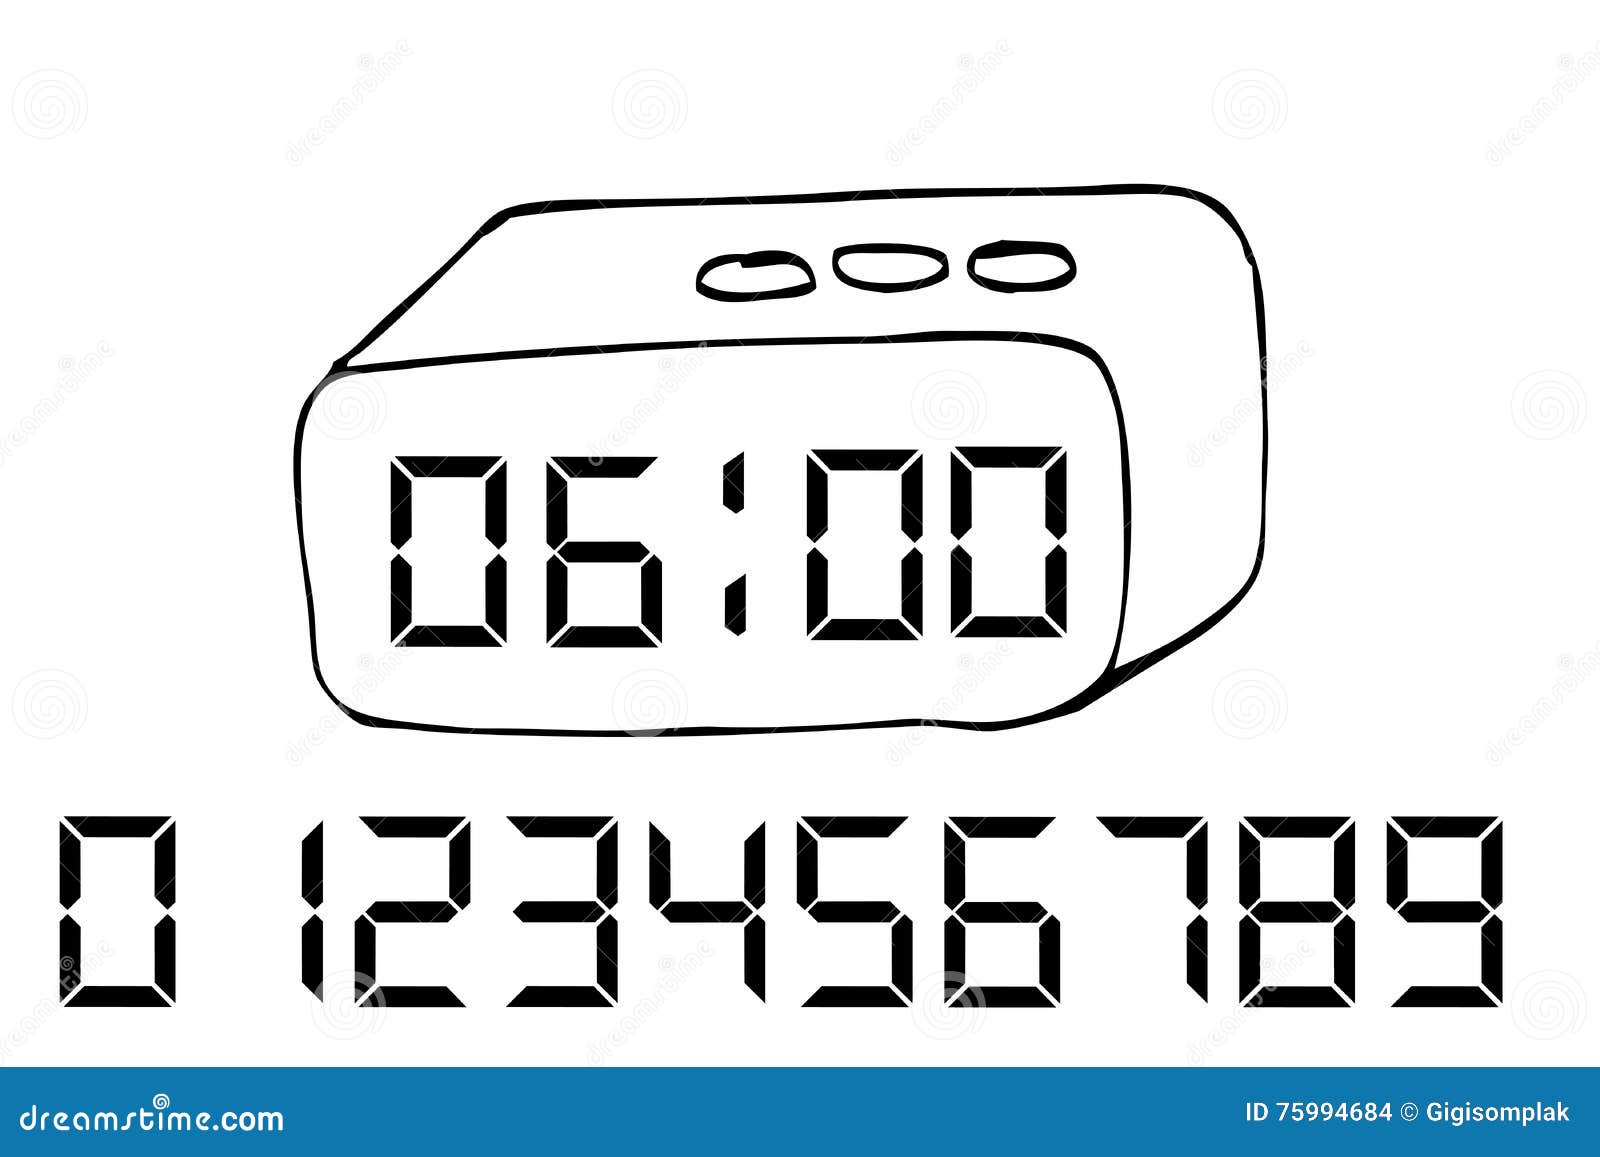 Hand-drawn sketch of a digital alarm clock